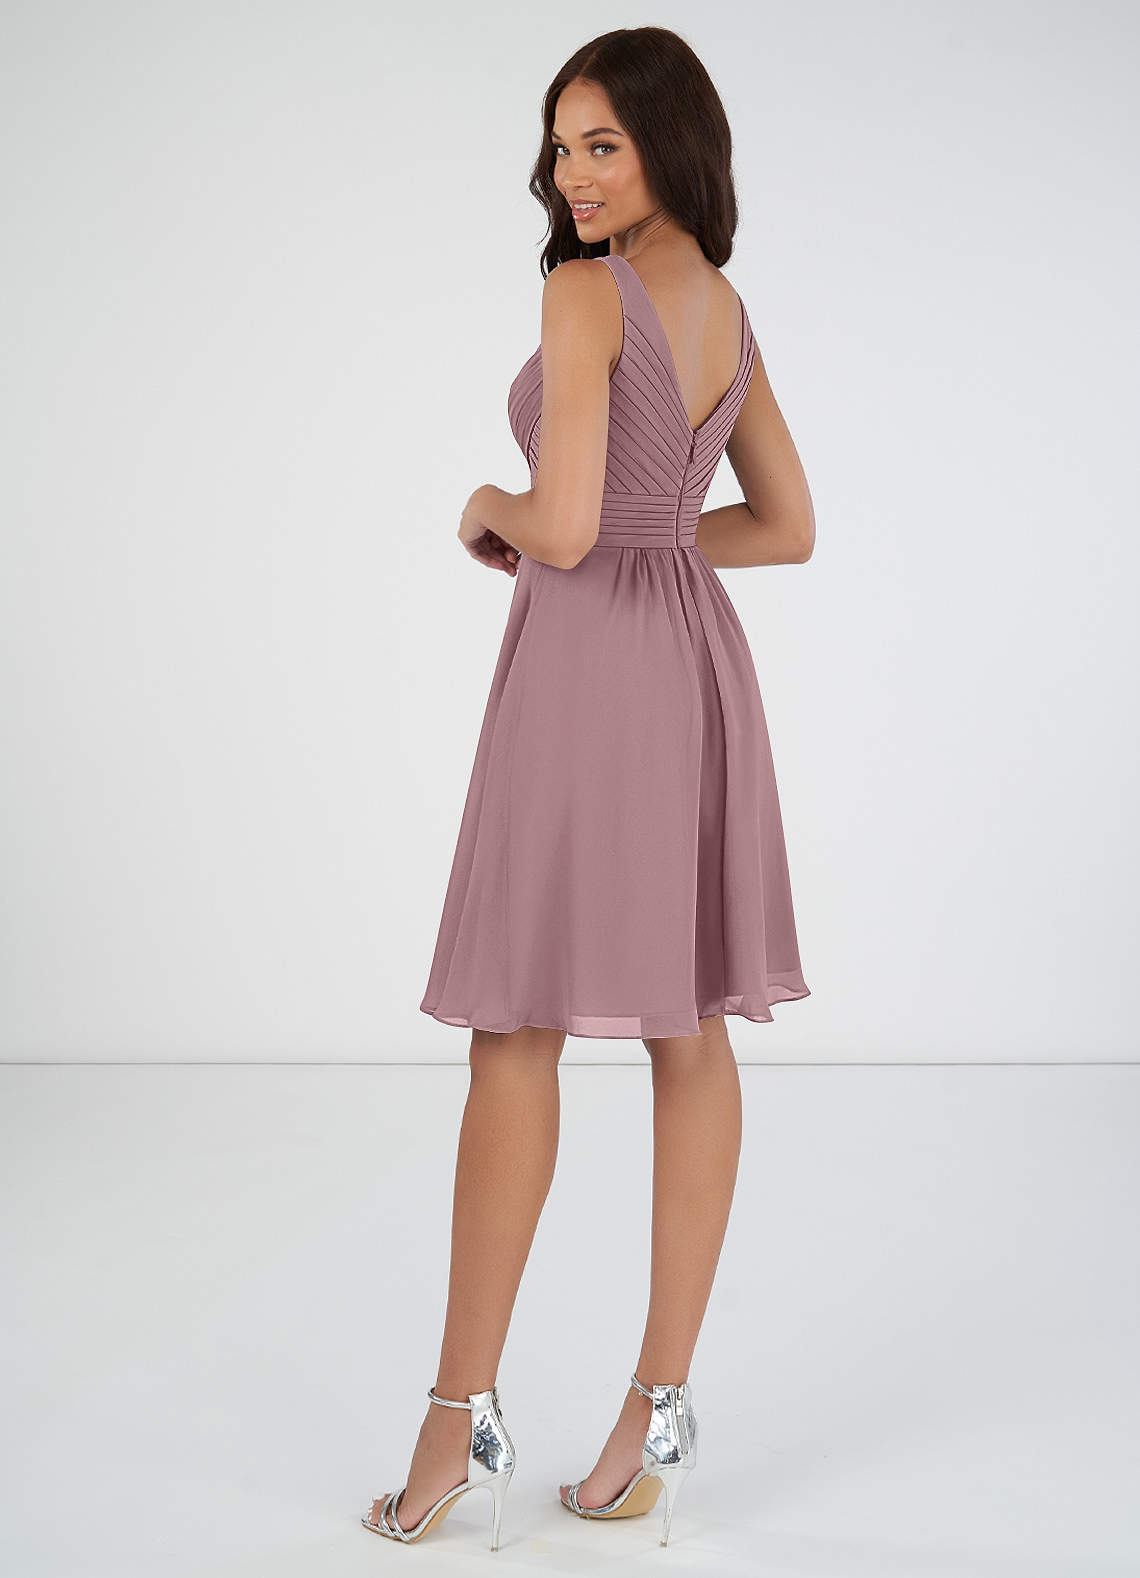 Azazie Grace Bridesmaid Dresses A-Line Pleated Chiffon Knee-Length Dress image1